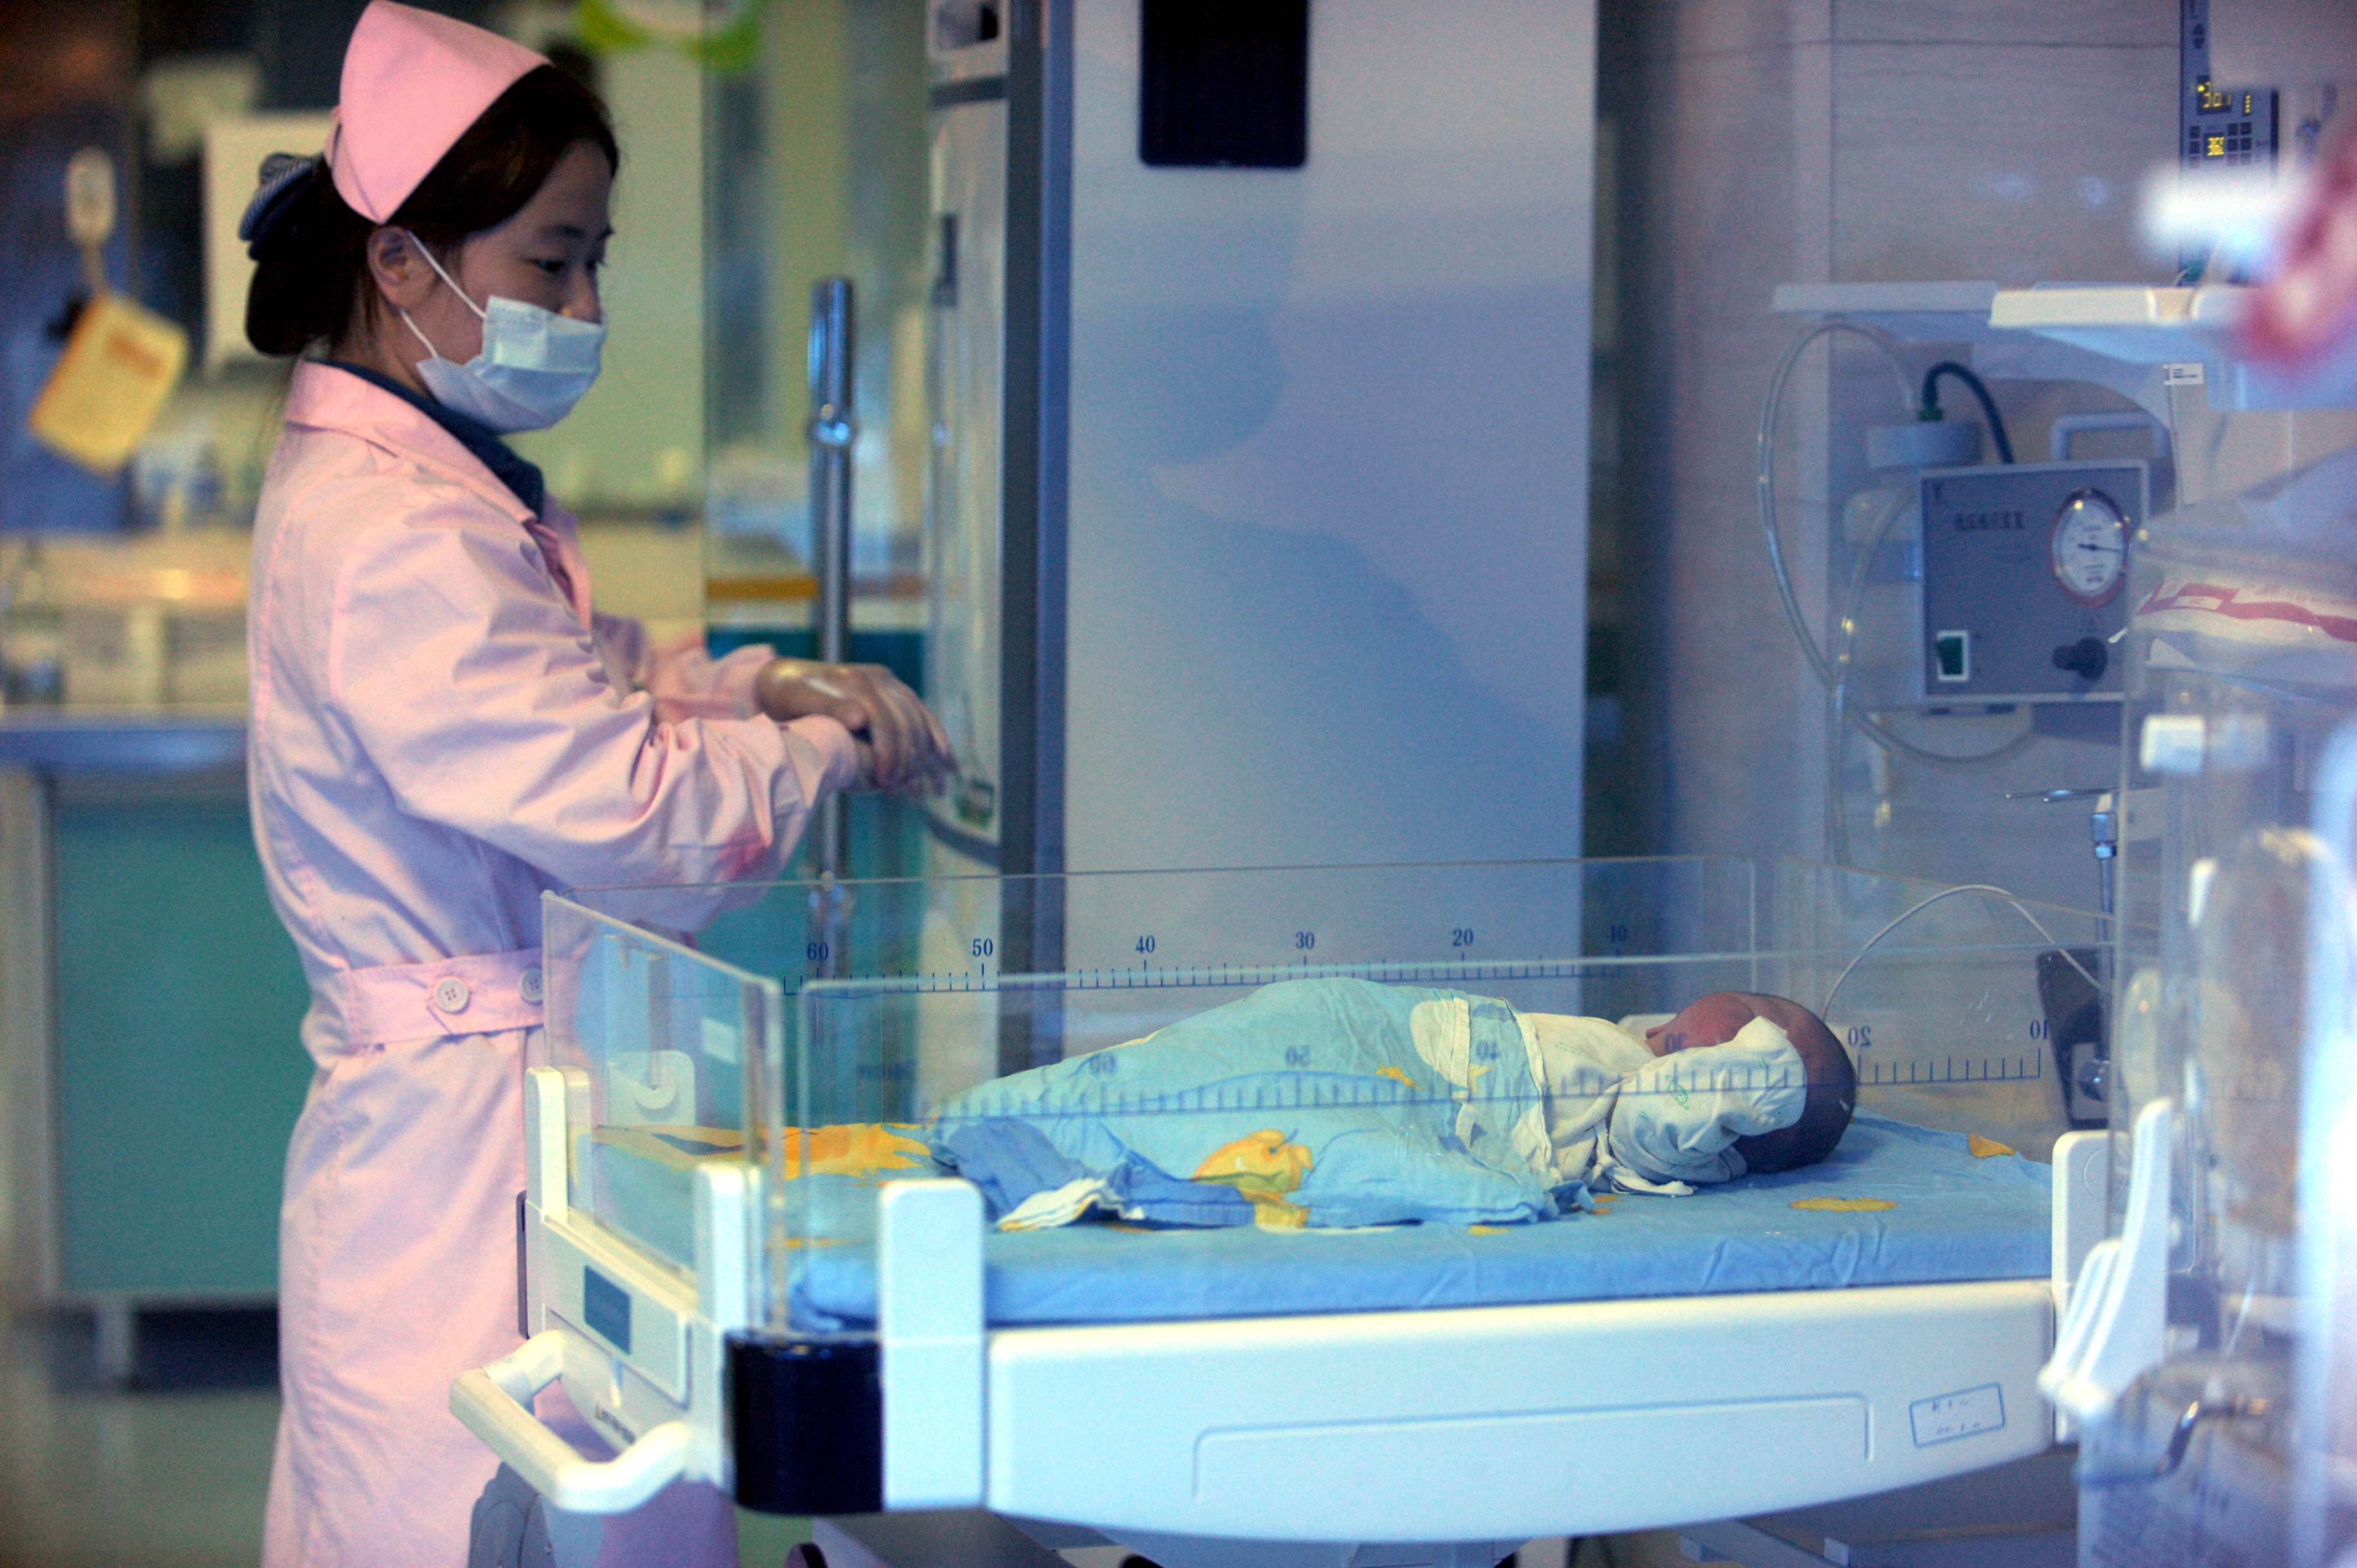 ولادة طفل بعد 4 سنوات من وفاة والديه! حالة مثيرة للجدل في الصين...معركة قانونية خاضها الأجداد الأربعة للحصول على &quot;الحفيد&quot;